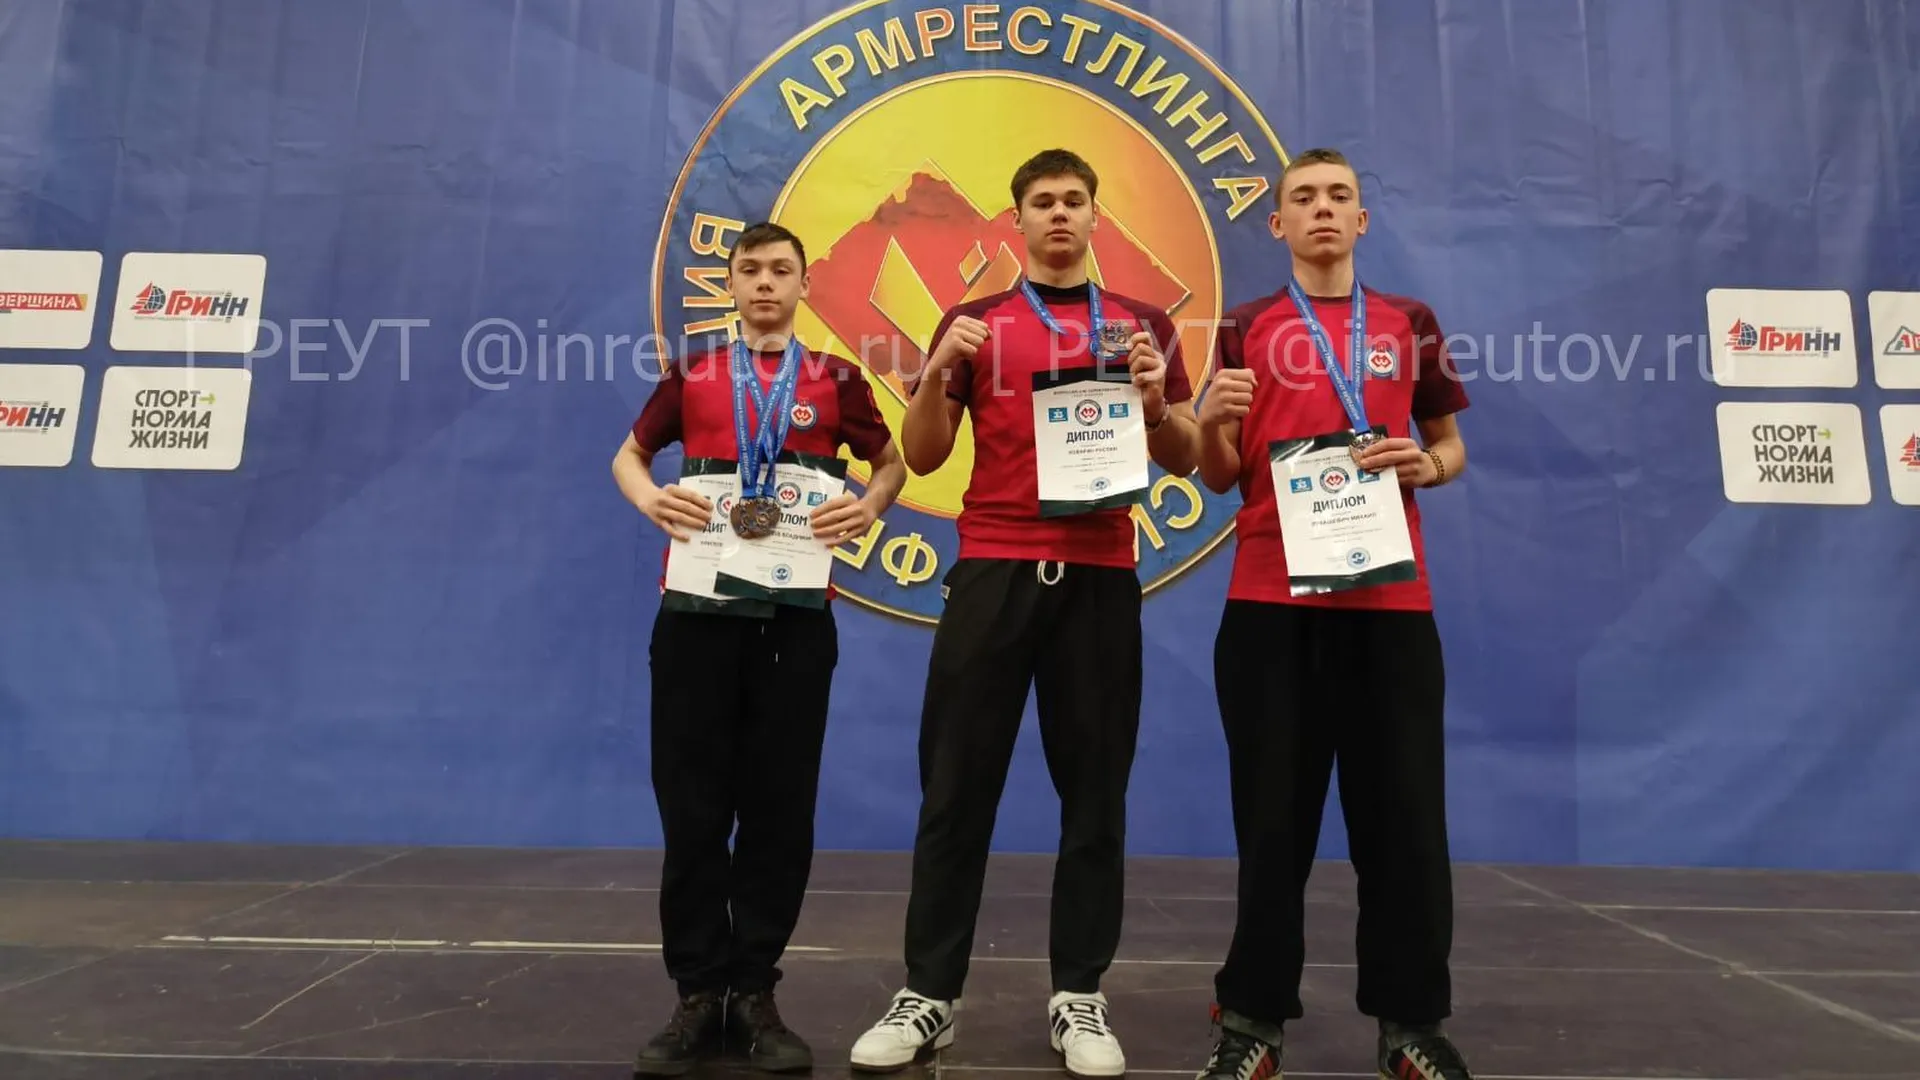 Реутовские спортсмены завоевали четыре медали на первом всероссийском турнире по армрестлингу среди юниоров